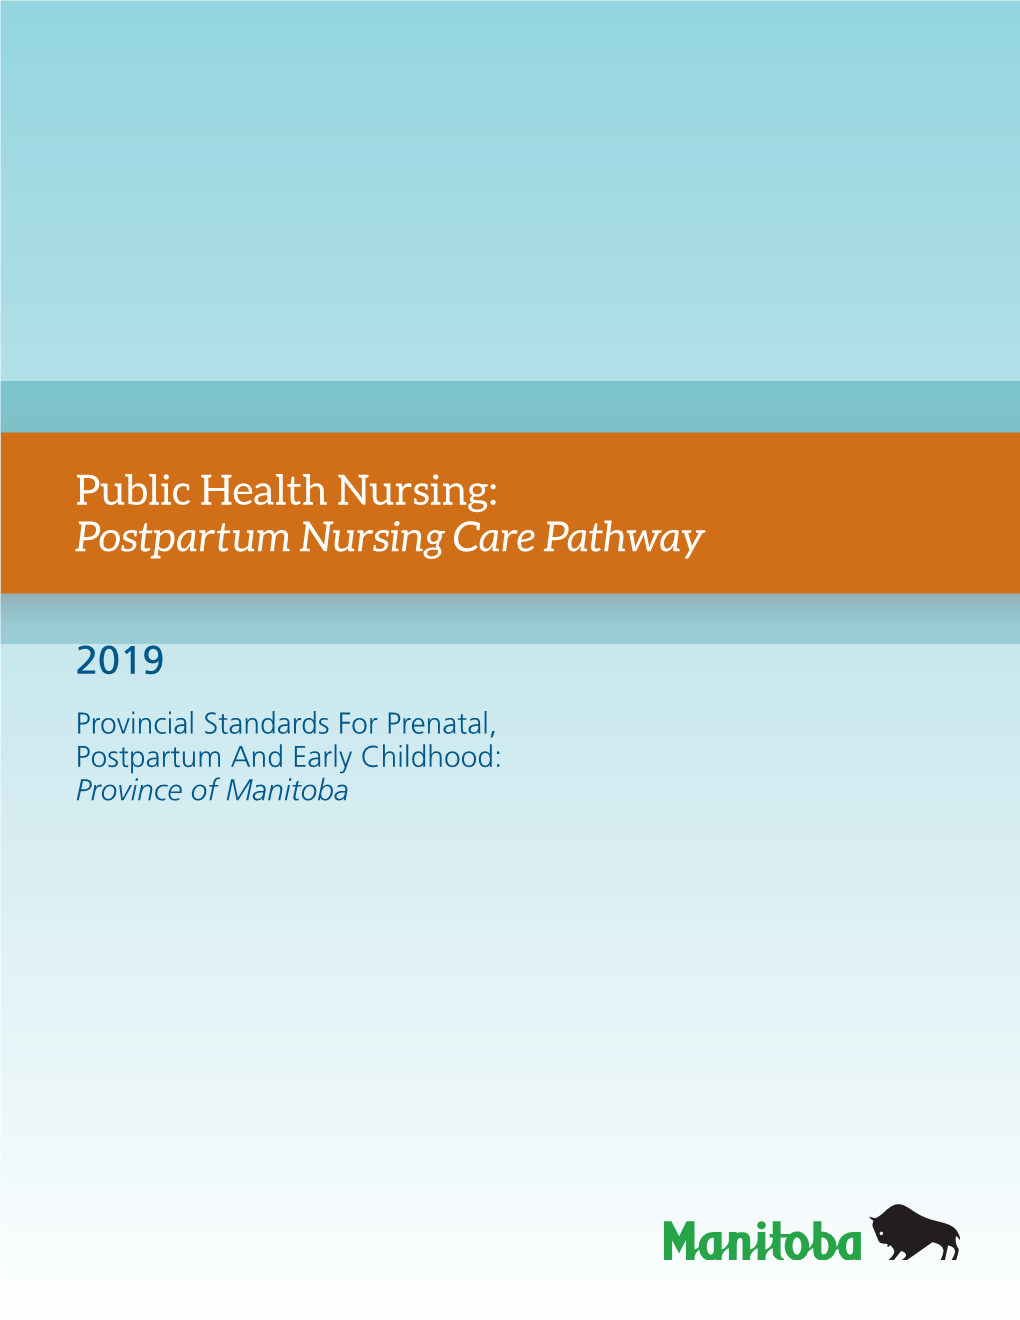 Public Health Nursing: Postpartum Nursing Care Pathway 2019